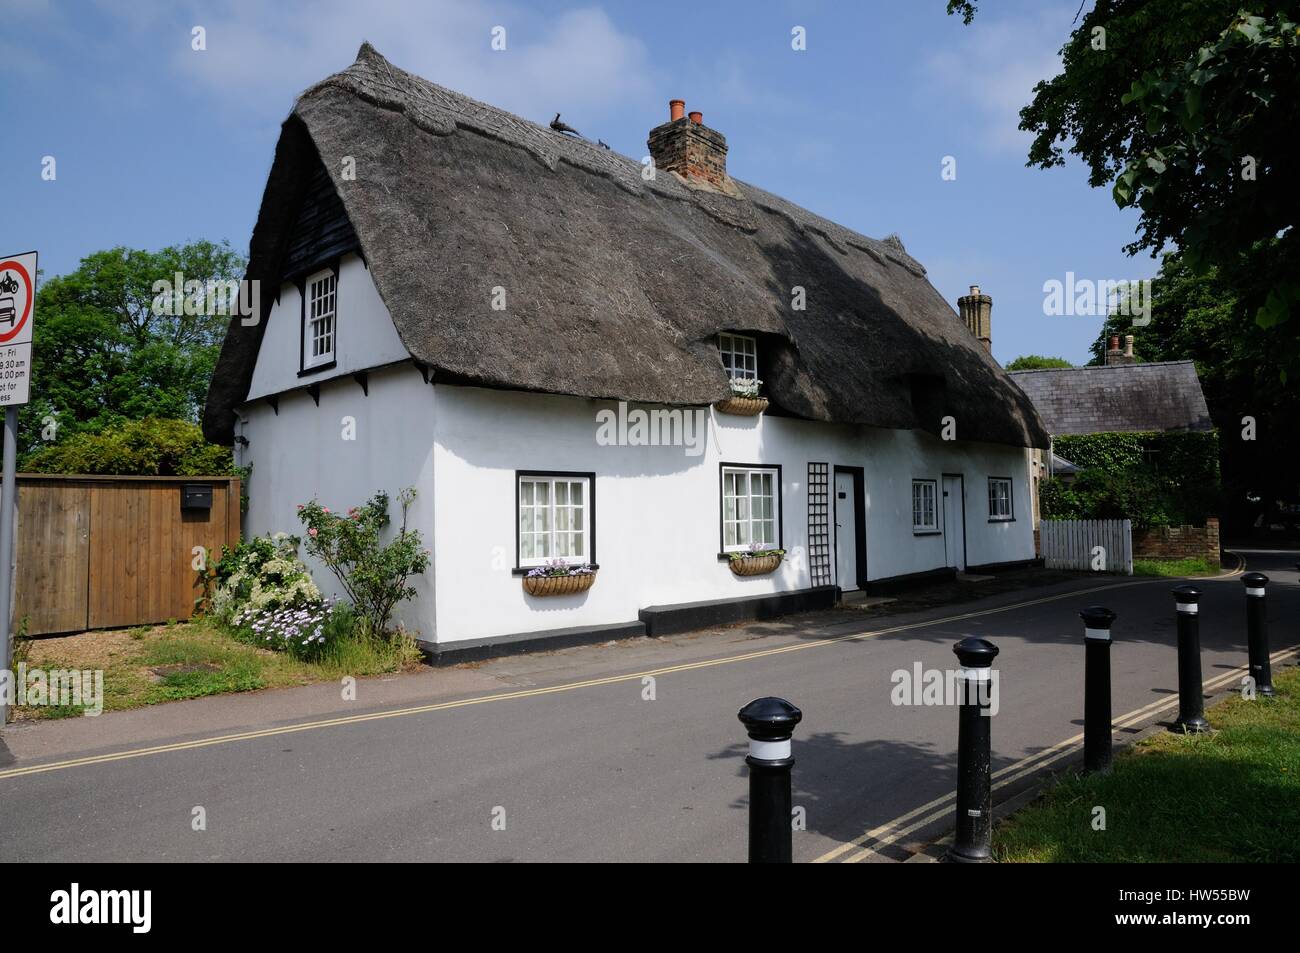 N° 1 Le Livre vert, Histon Cambridgeshire, est l'un des cottages attrayants qui se situent autour de la place du village. Banque D'Images